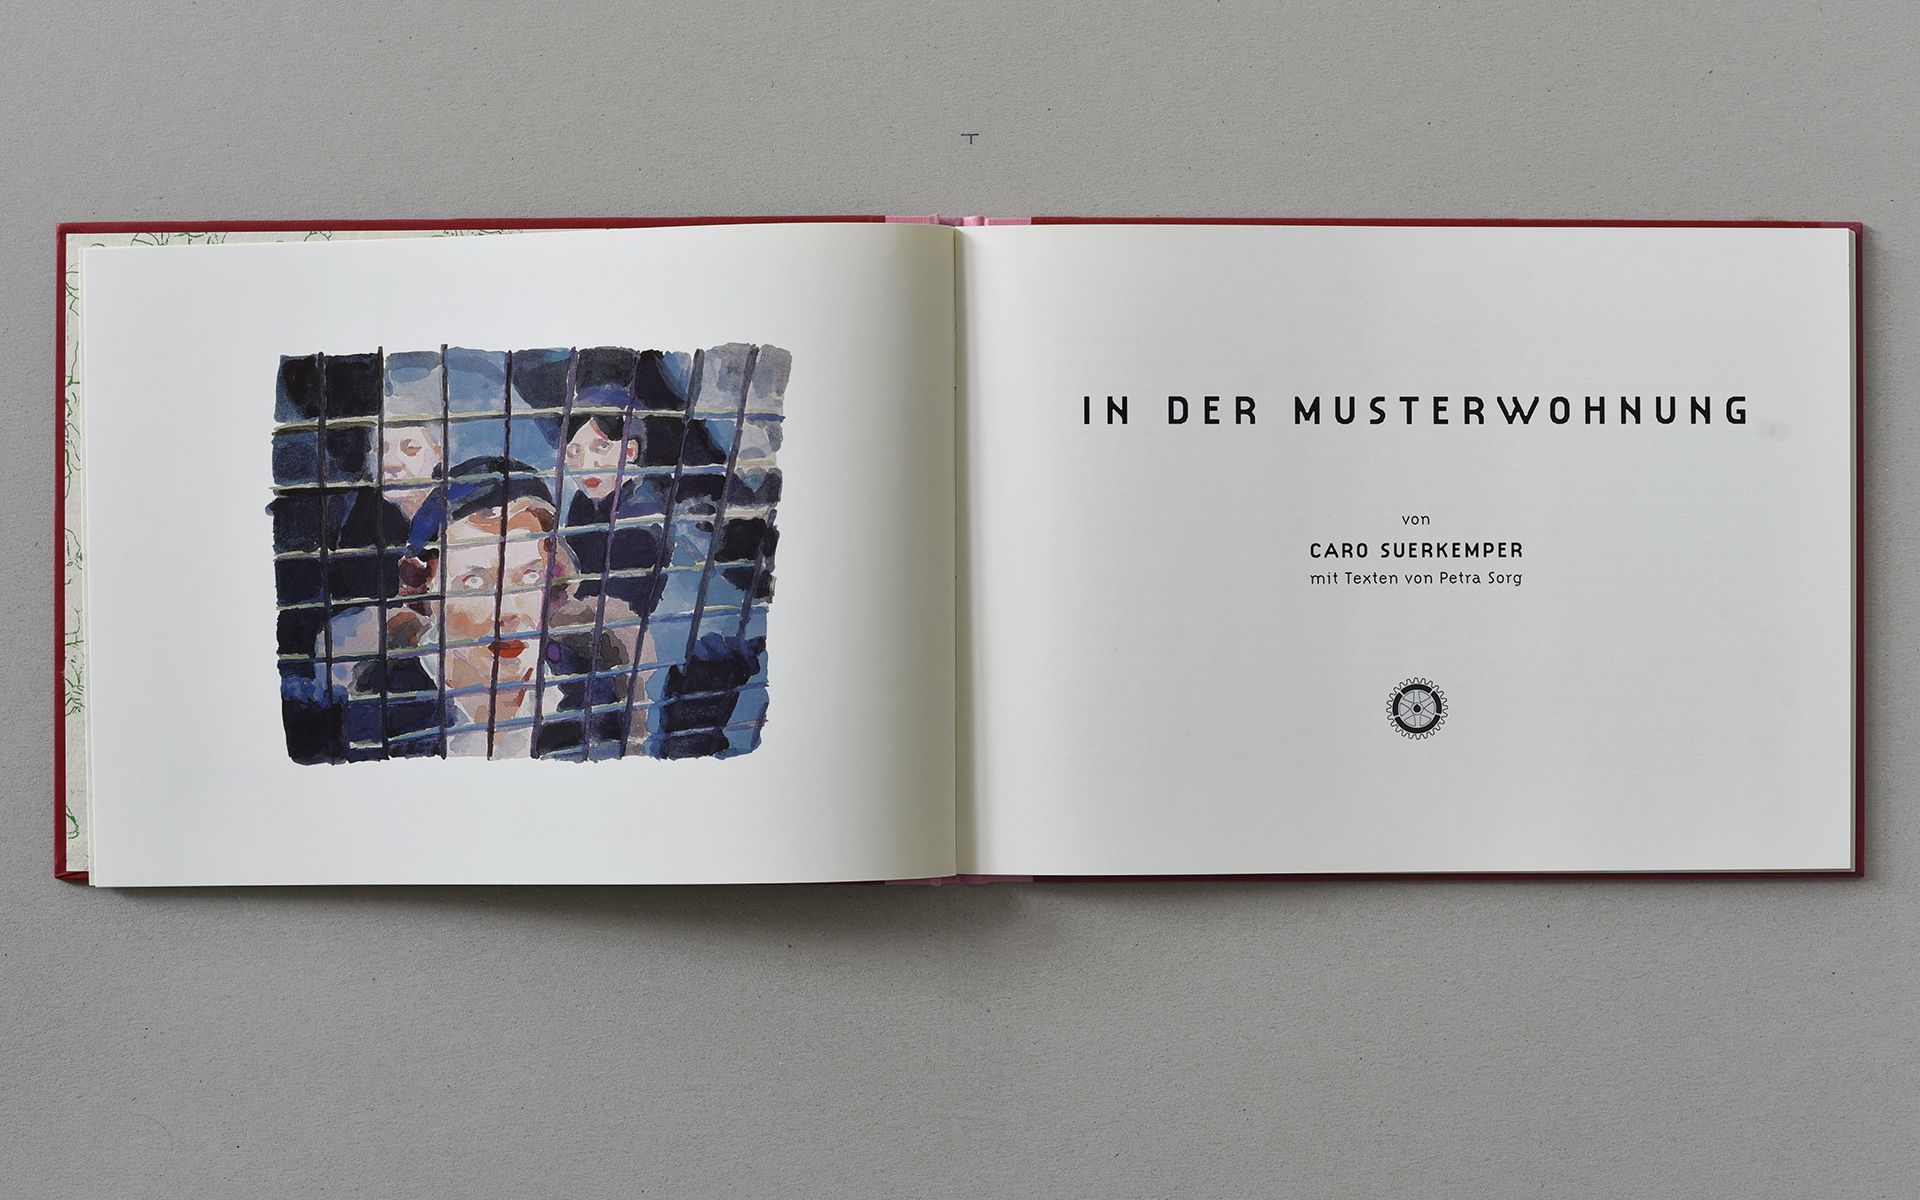 Katalog Caro Suerkemper - In der Musterwohnung